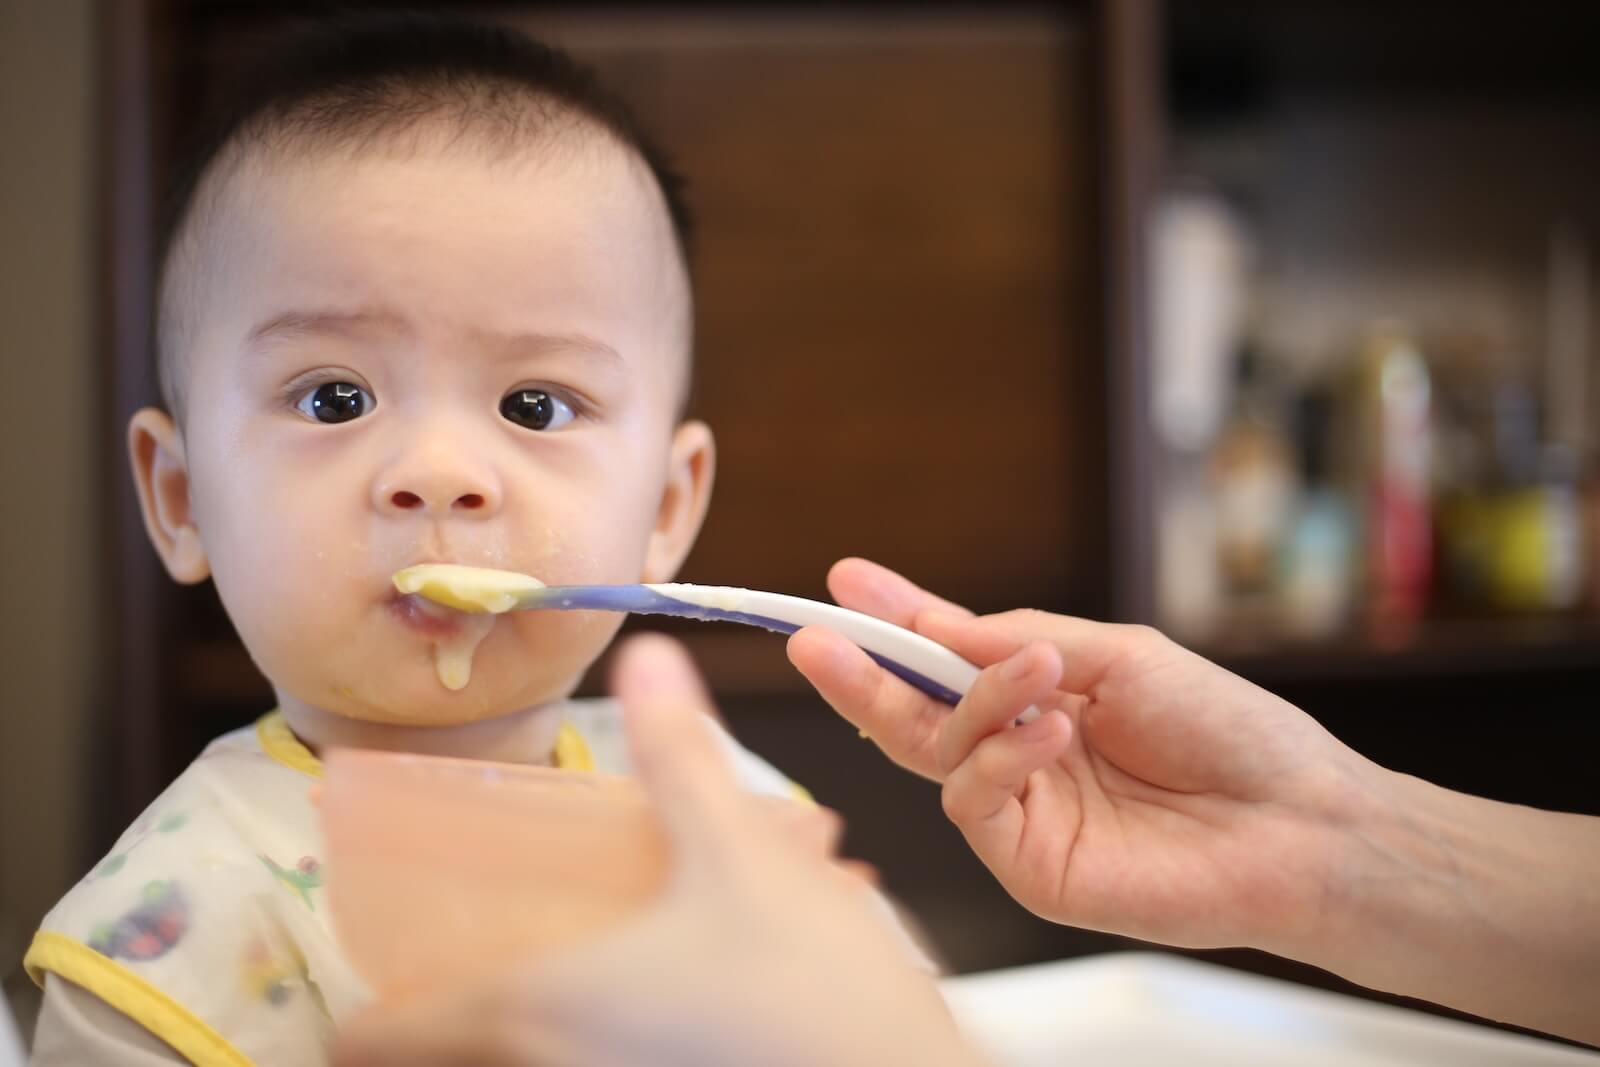 Brínda los mejores alimentos a tu bebé